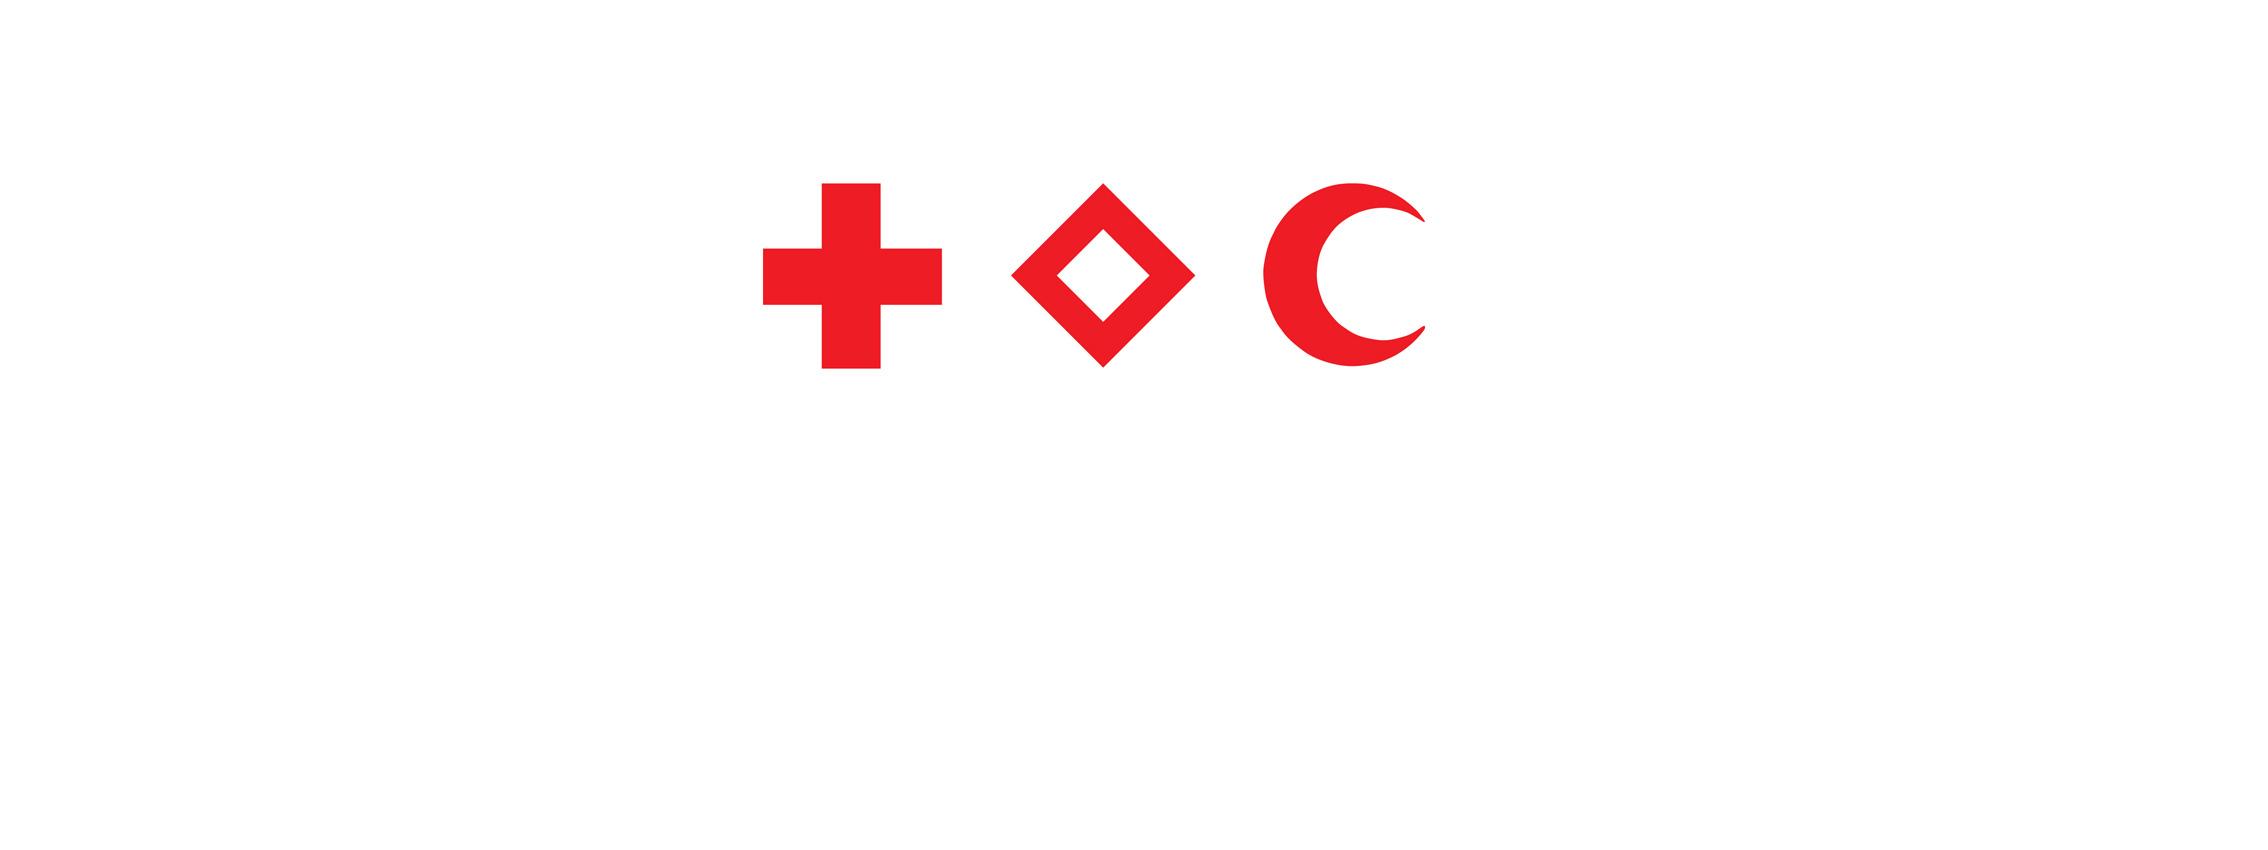 Die Embleme der Rotkreuz-und Rothalbmond-Bewegung: das Rote Kreuz, der Rote Kristall und der Rote Halbmond